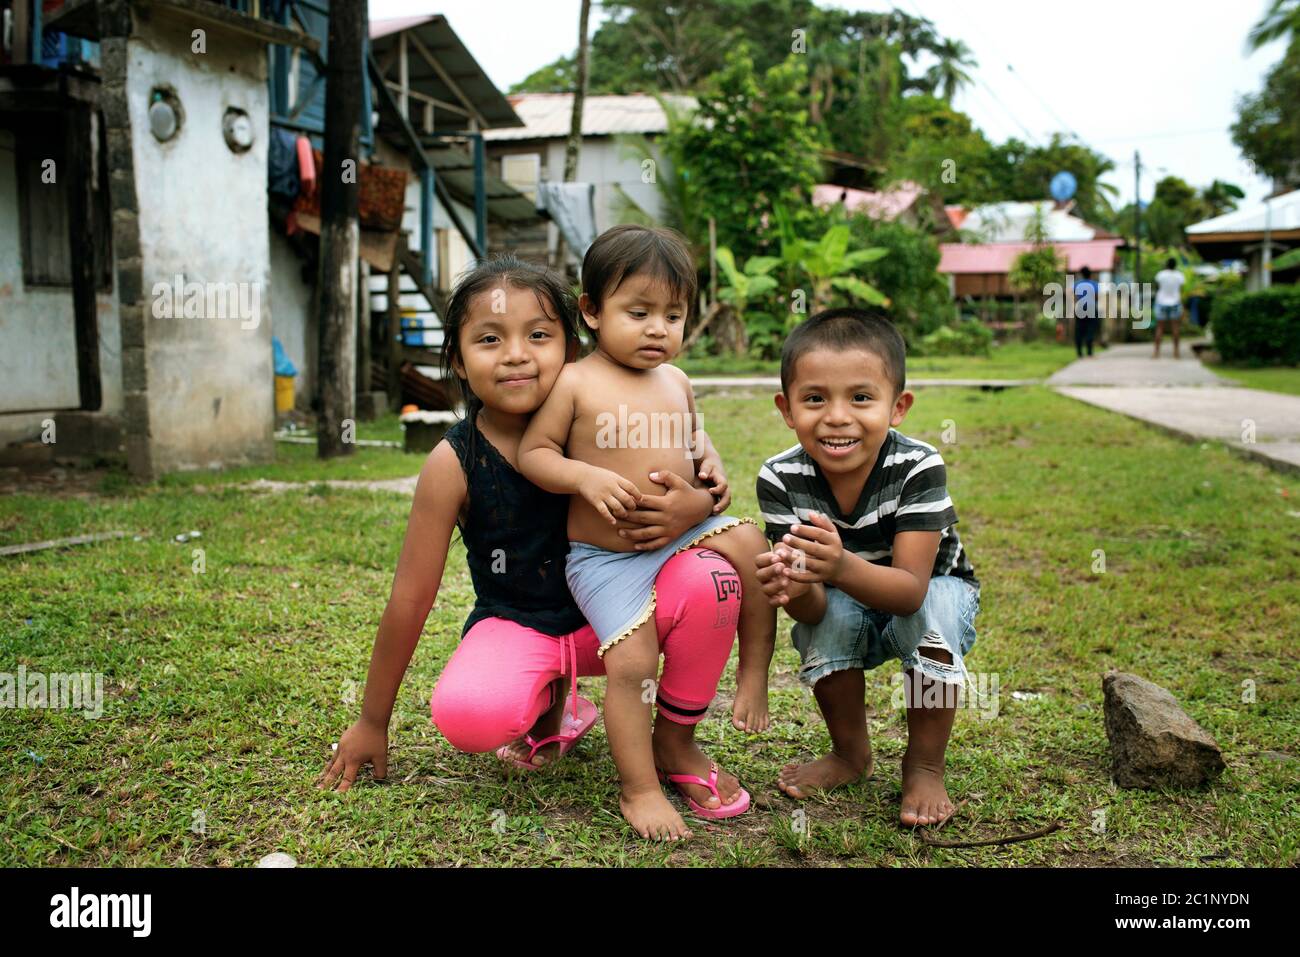 Authentischer, entspannter karibischer Lebensstil mit glücklichen Kindern, die in der Nähe des Bürgersteiges in Isla Bastimentos, Bocas del Toro Provinz, Panama spielen. Oktober 2018 Stockfoto